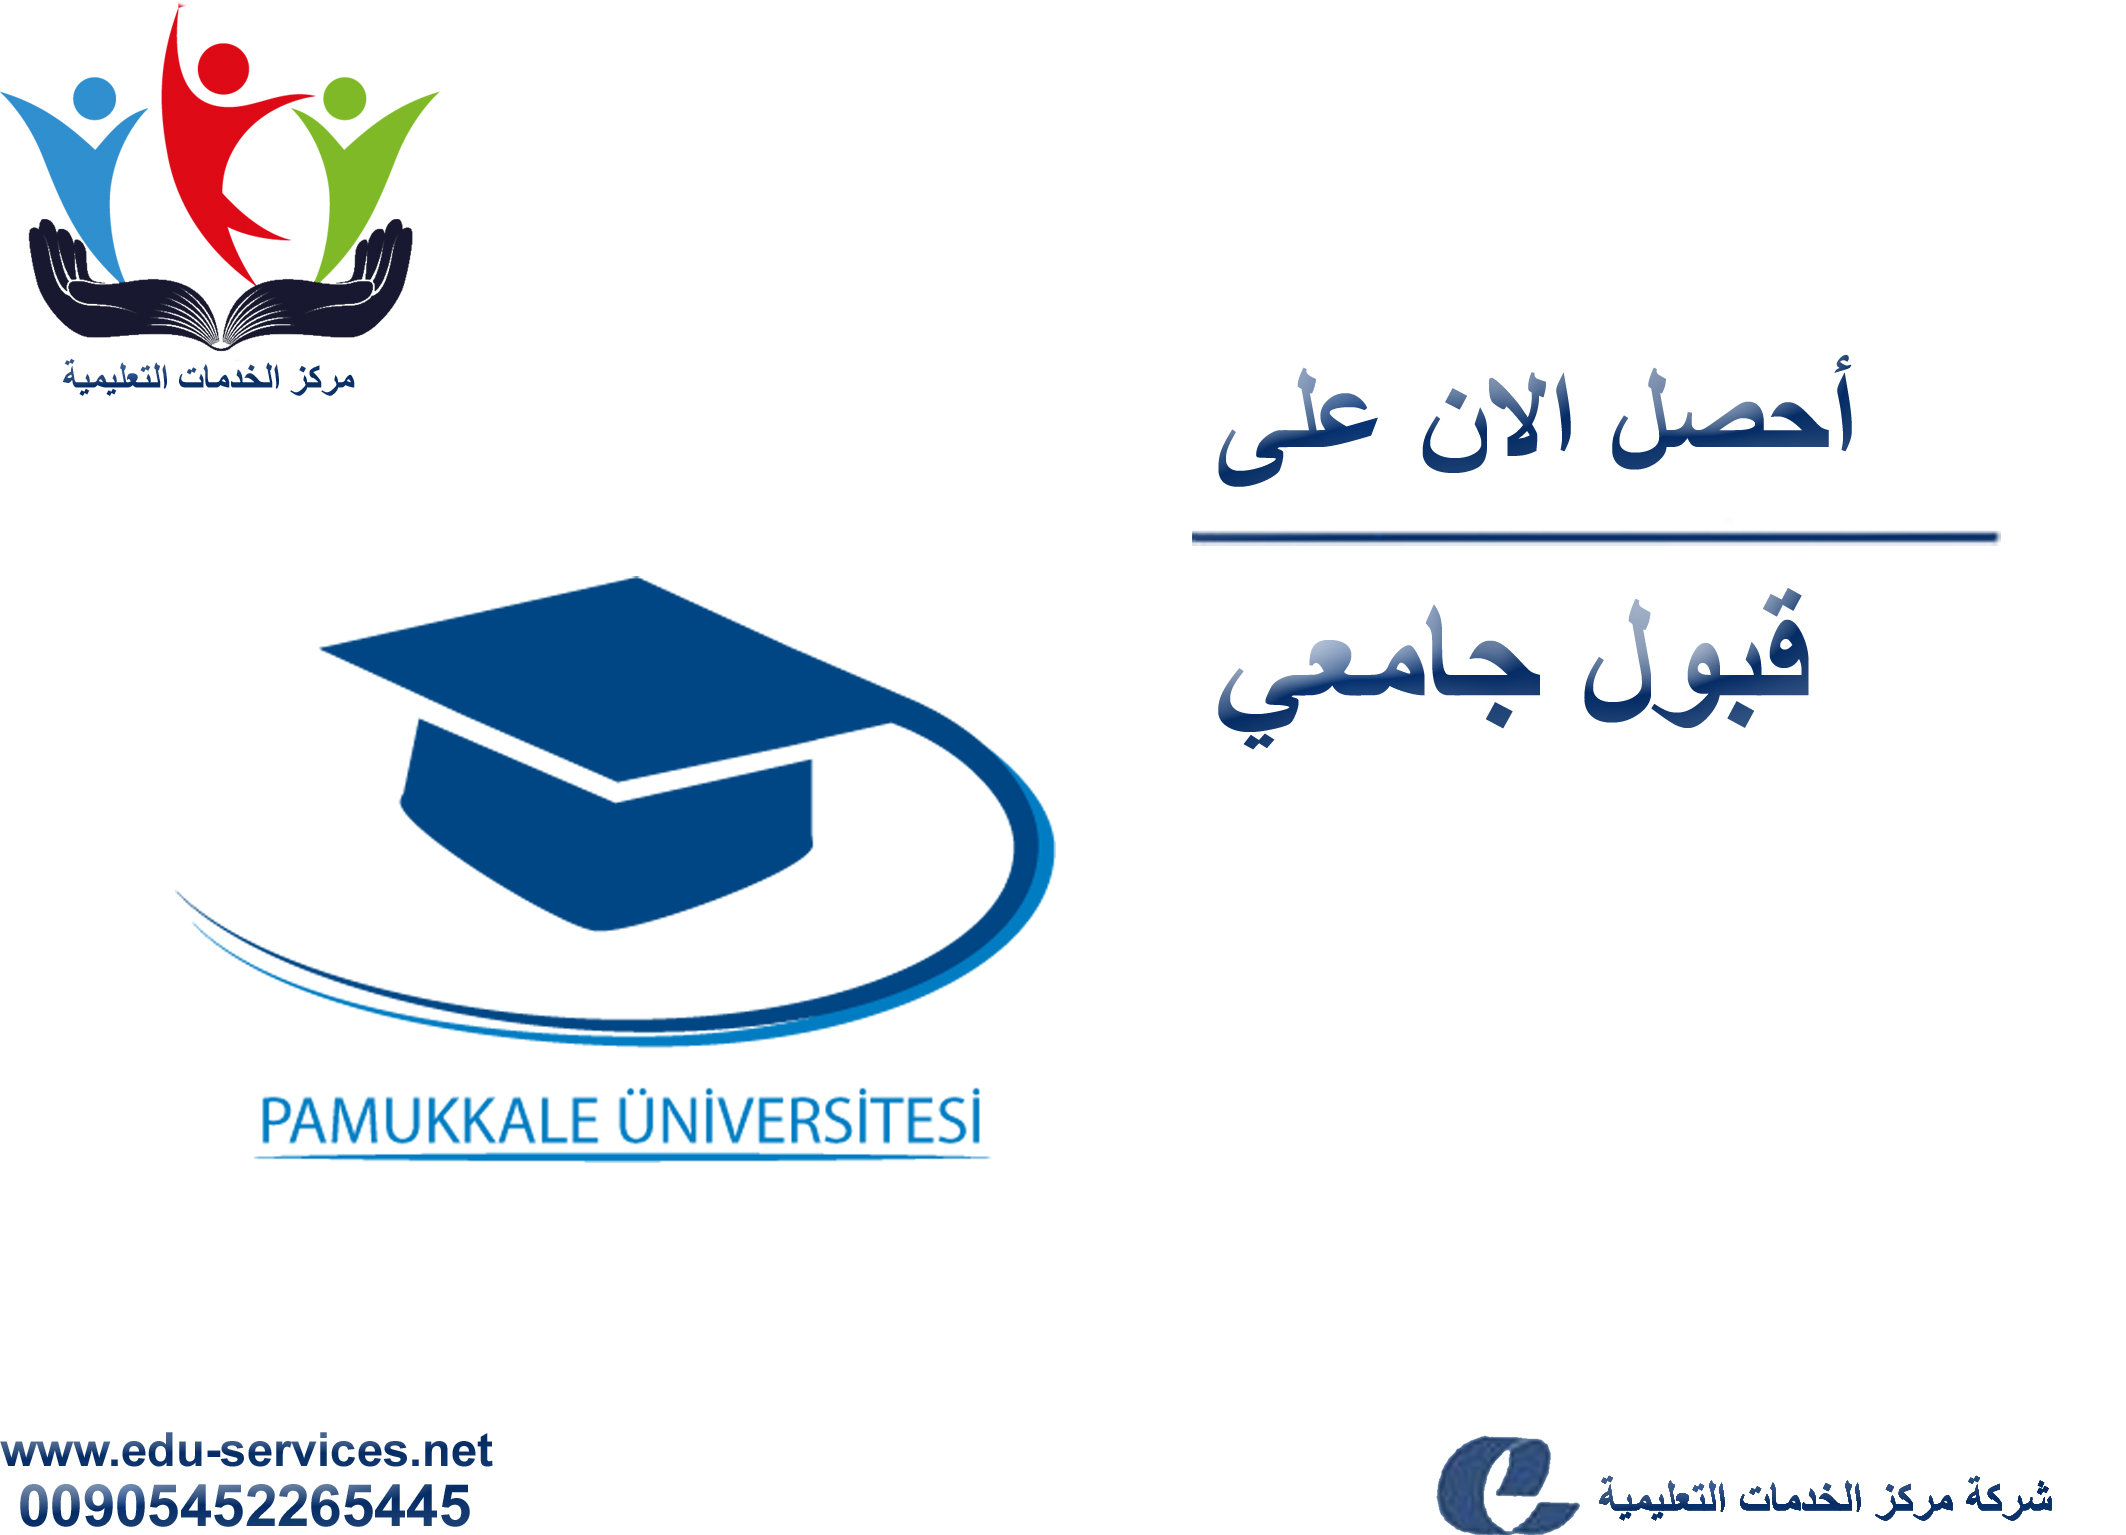 افتتاح التسجيل على جامعة باموكالي للدراسات العليا للعام 2018